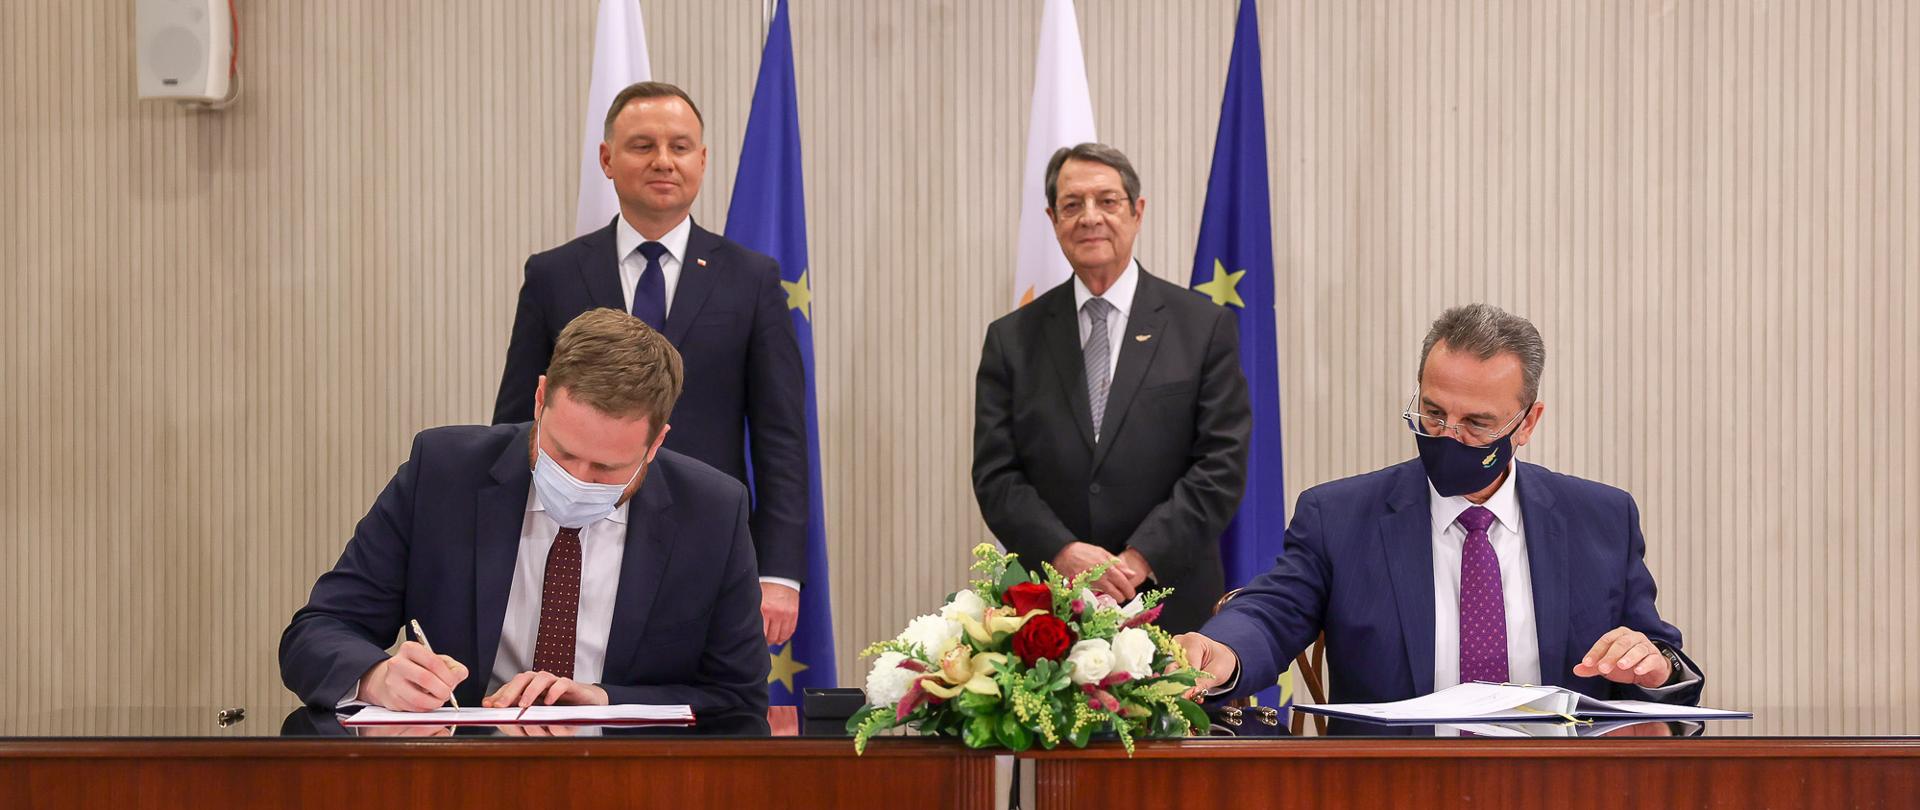 Ministrowie Janusz Cieszyński i Kyriacos Kokkinos podczas podpisywania porozumienia. Za nimi prezydenci Polski i Cypru.